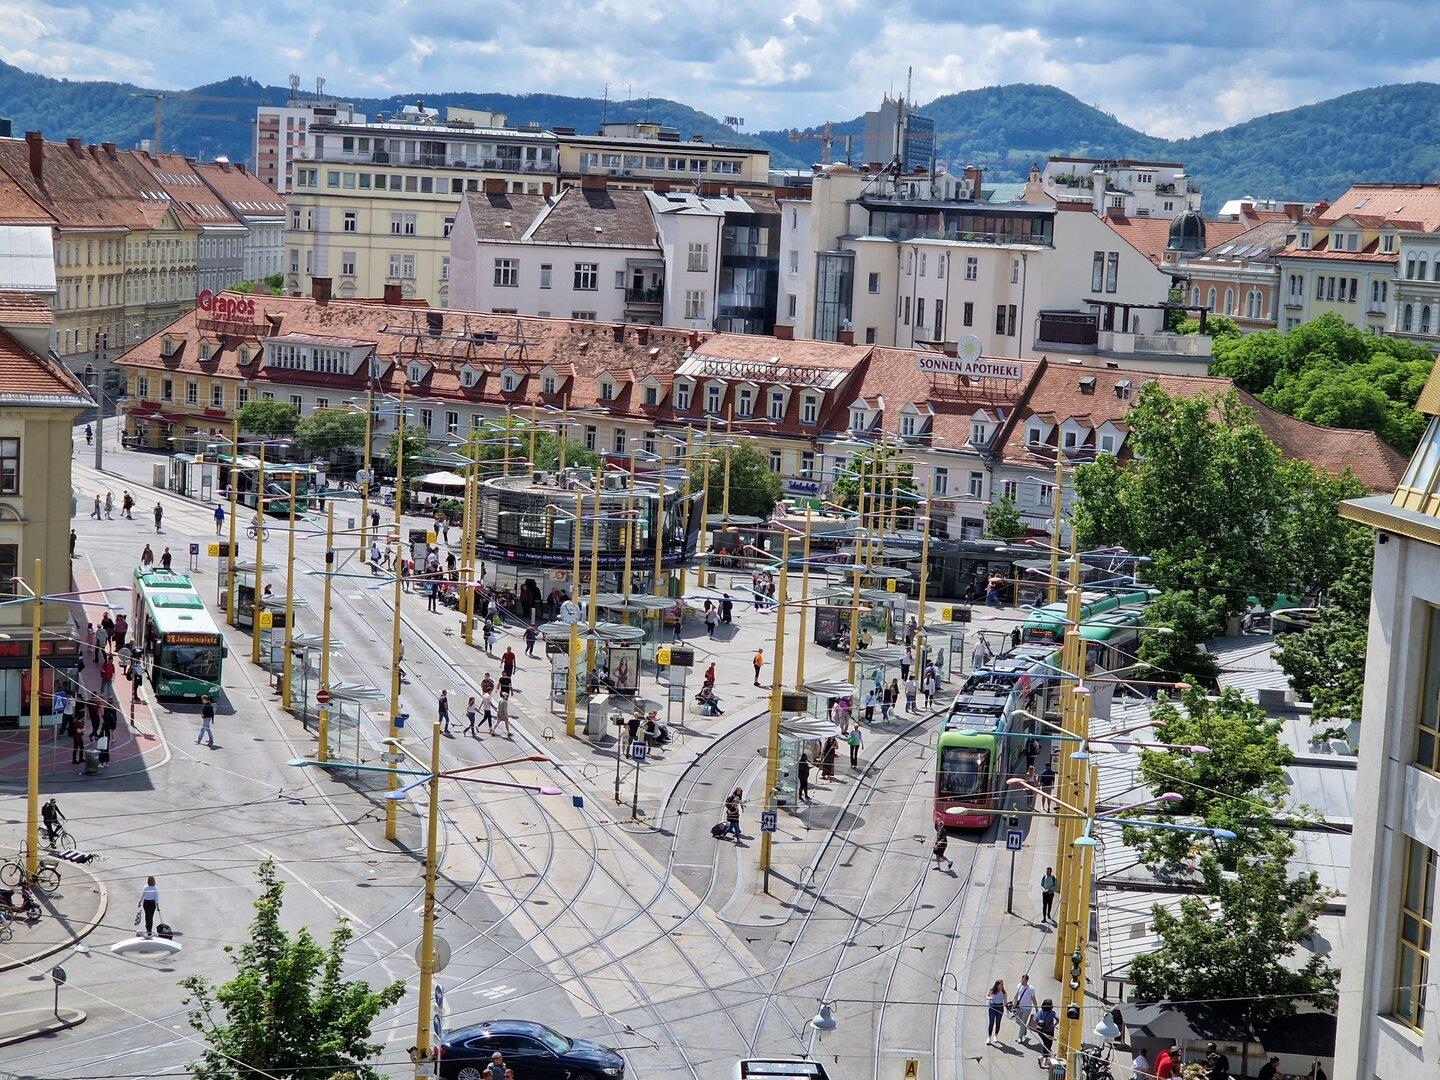 Terroranschlag in Graz geplant: Verdächtige ist erst 14 Jahre alt